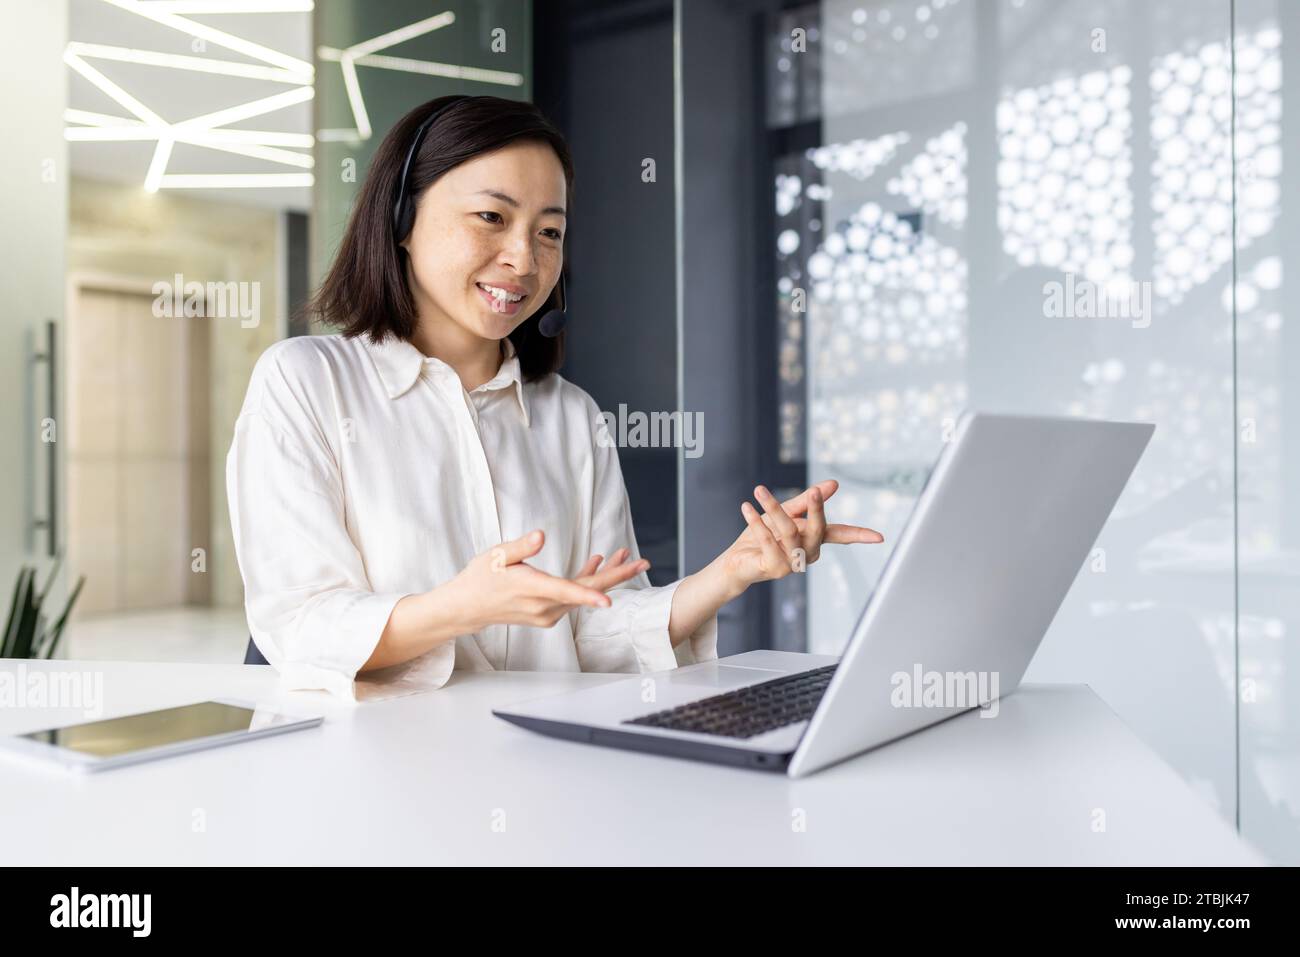 Donna d'affari sorridente di successo che lavora all'interno dell'ufficio sul posto di lavoro, che usa il laptop per videochiamare, sorridendo. Una donna asiatica utilizza una cuffia per consultare e comunicare con un cliente. Foto Stock